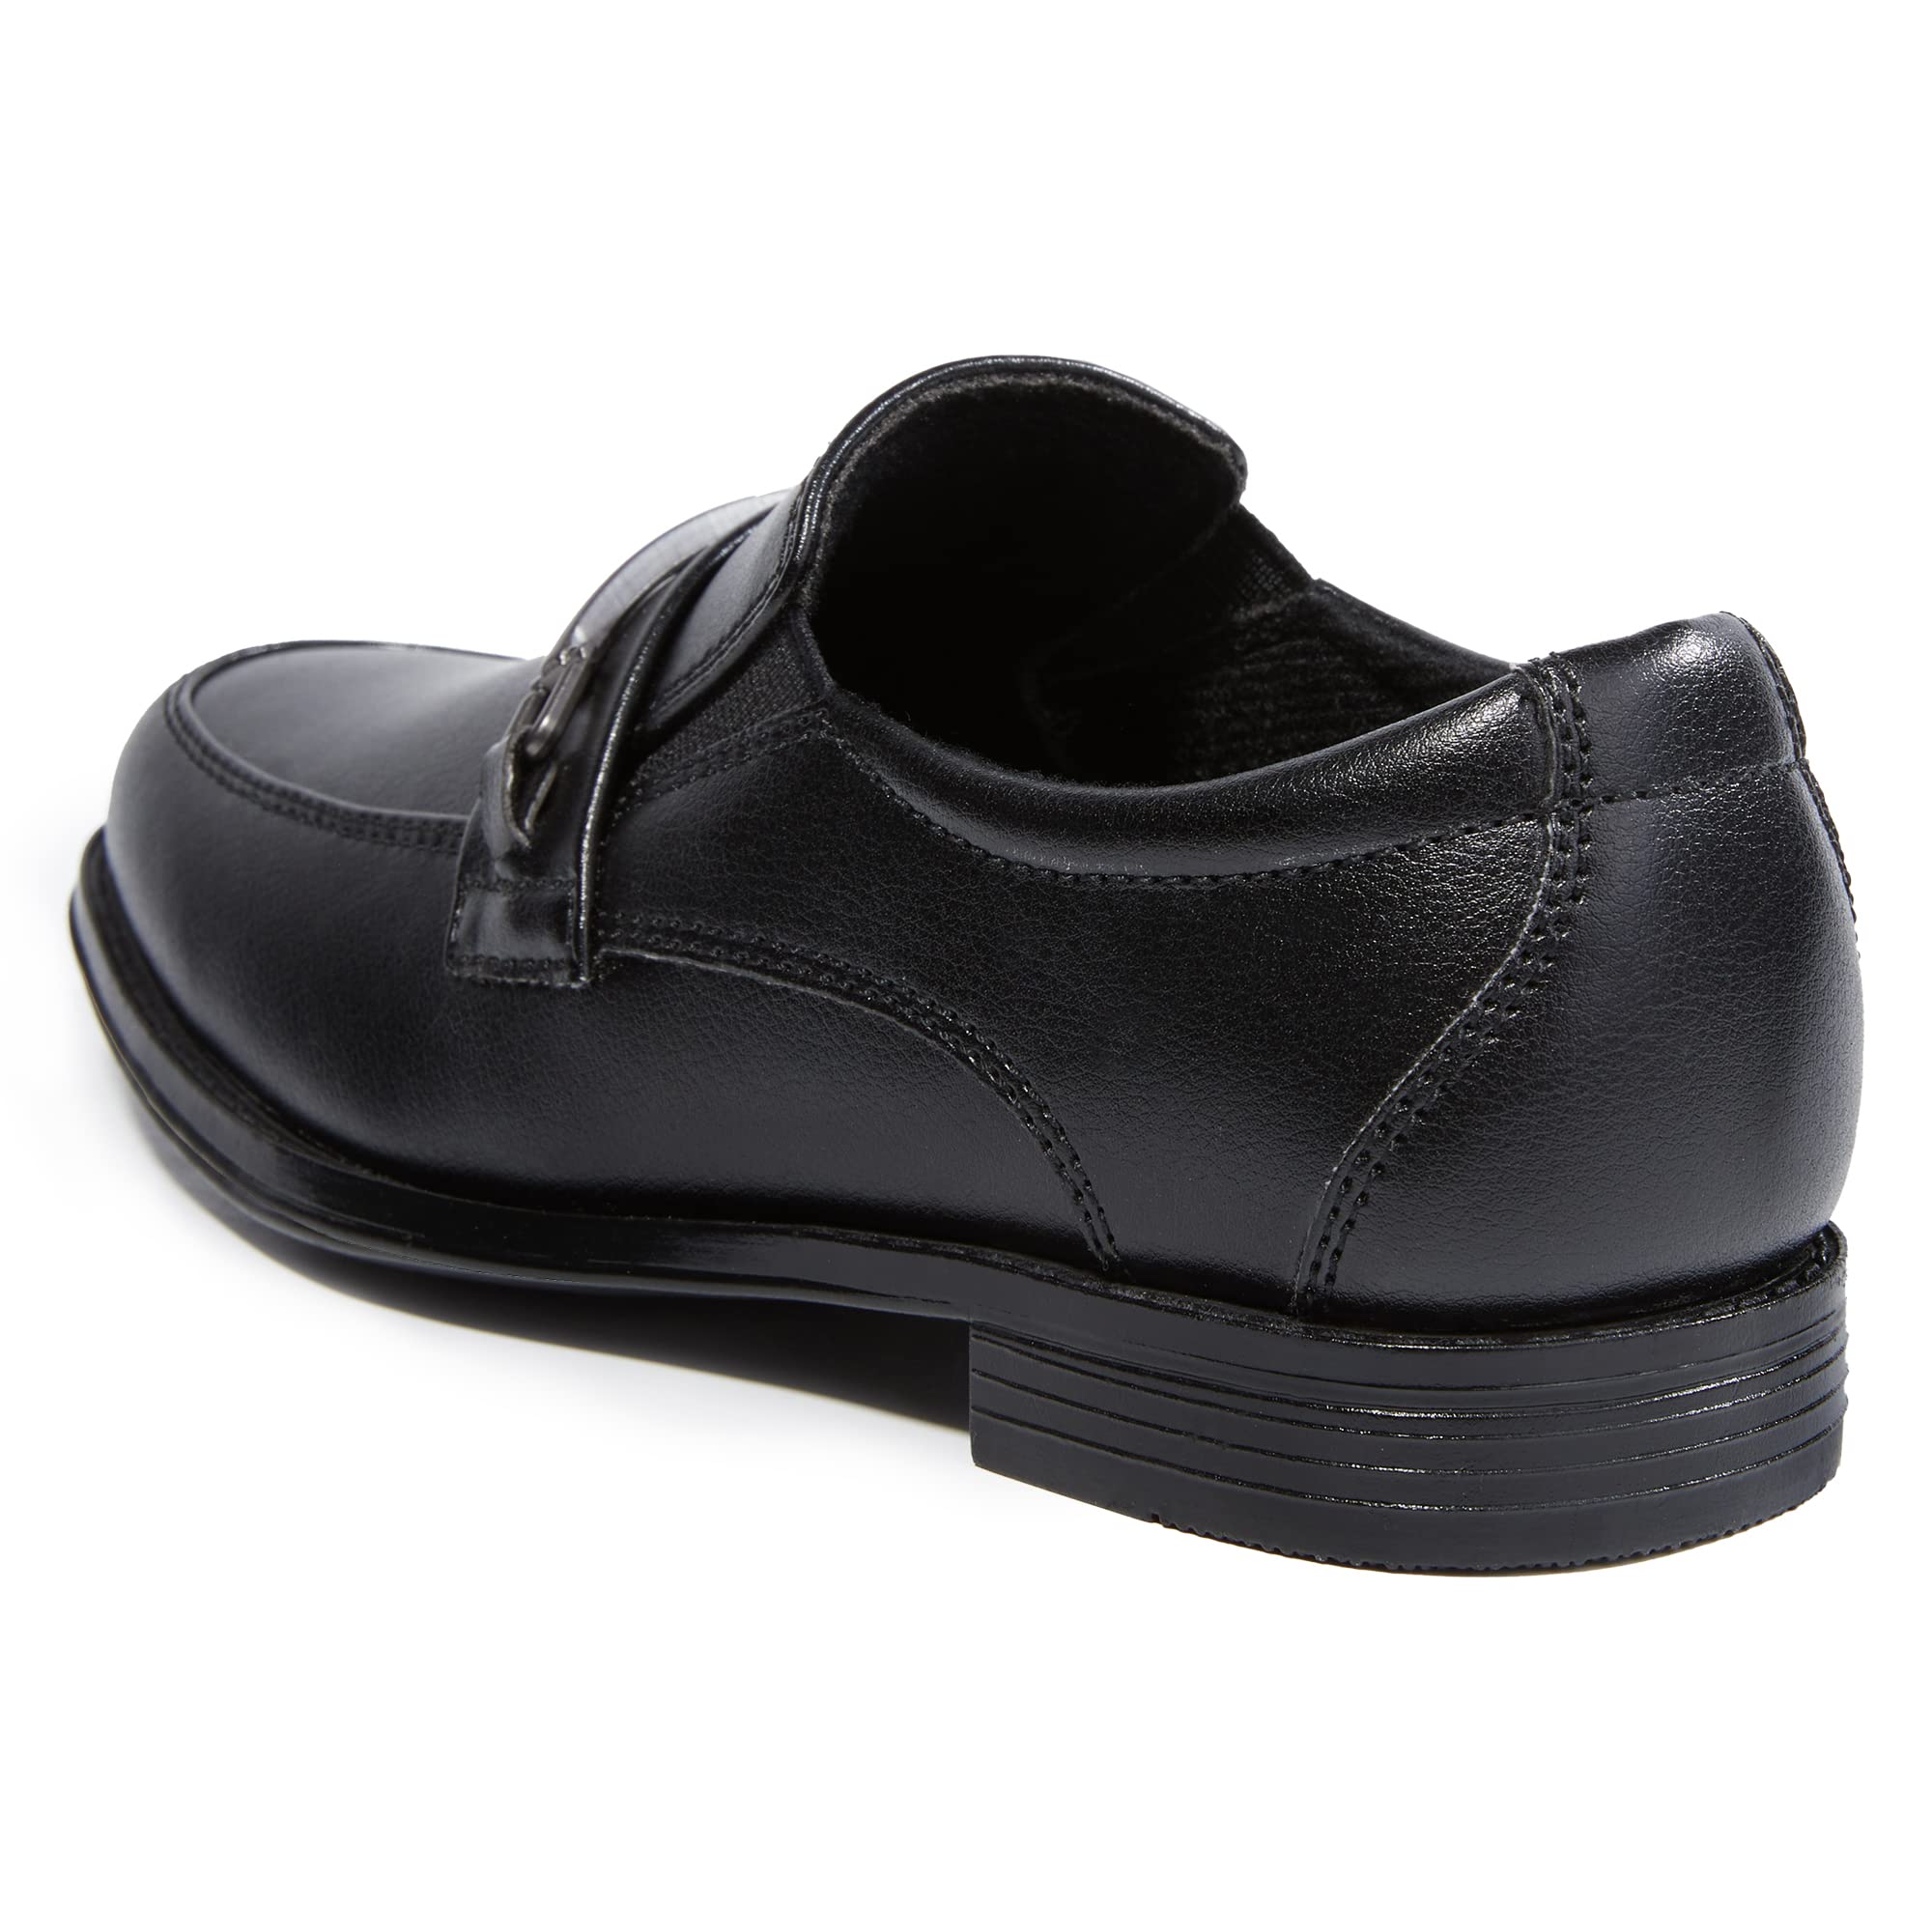 HOMEHOT Boys Oxford Dress Shoes Uniform Slip on Loafers(Toddler/littile Kids/Big Kids)